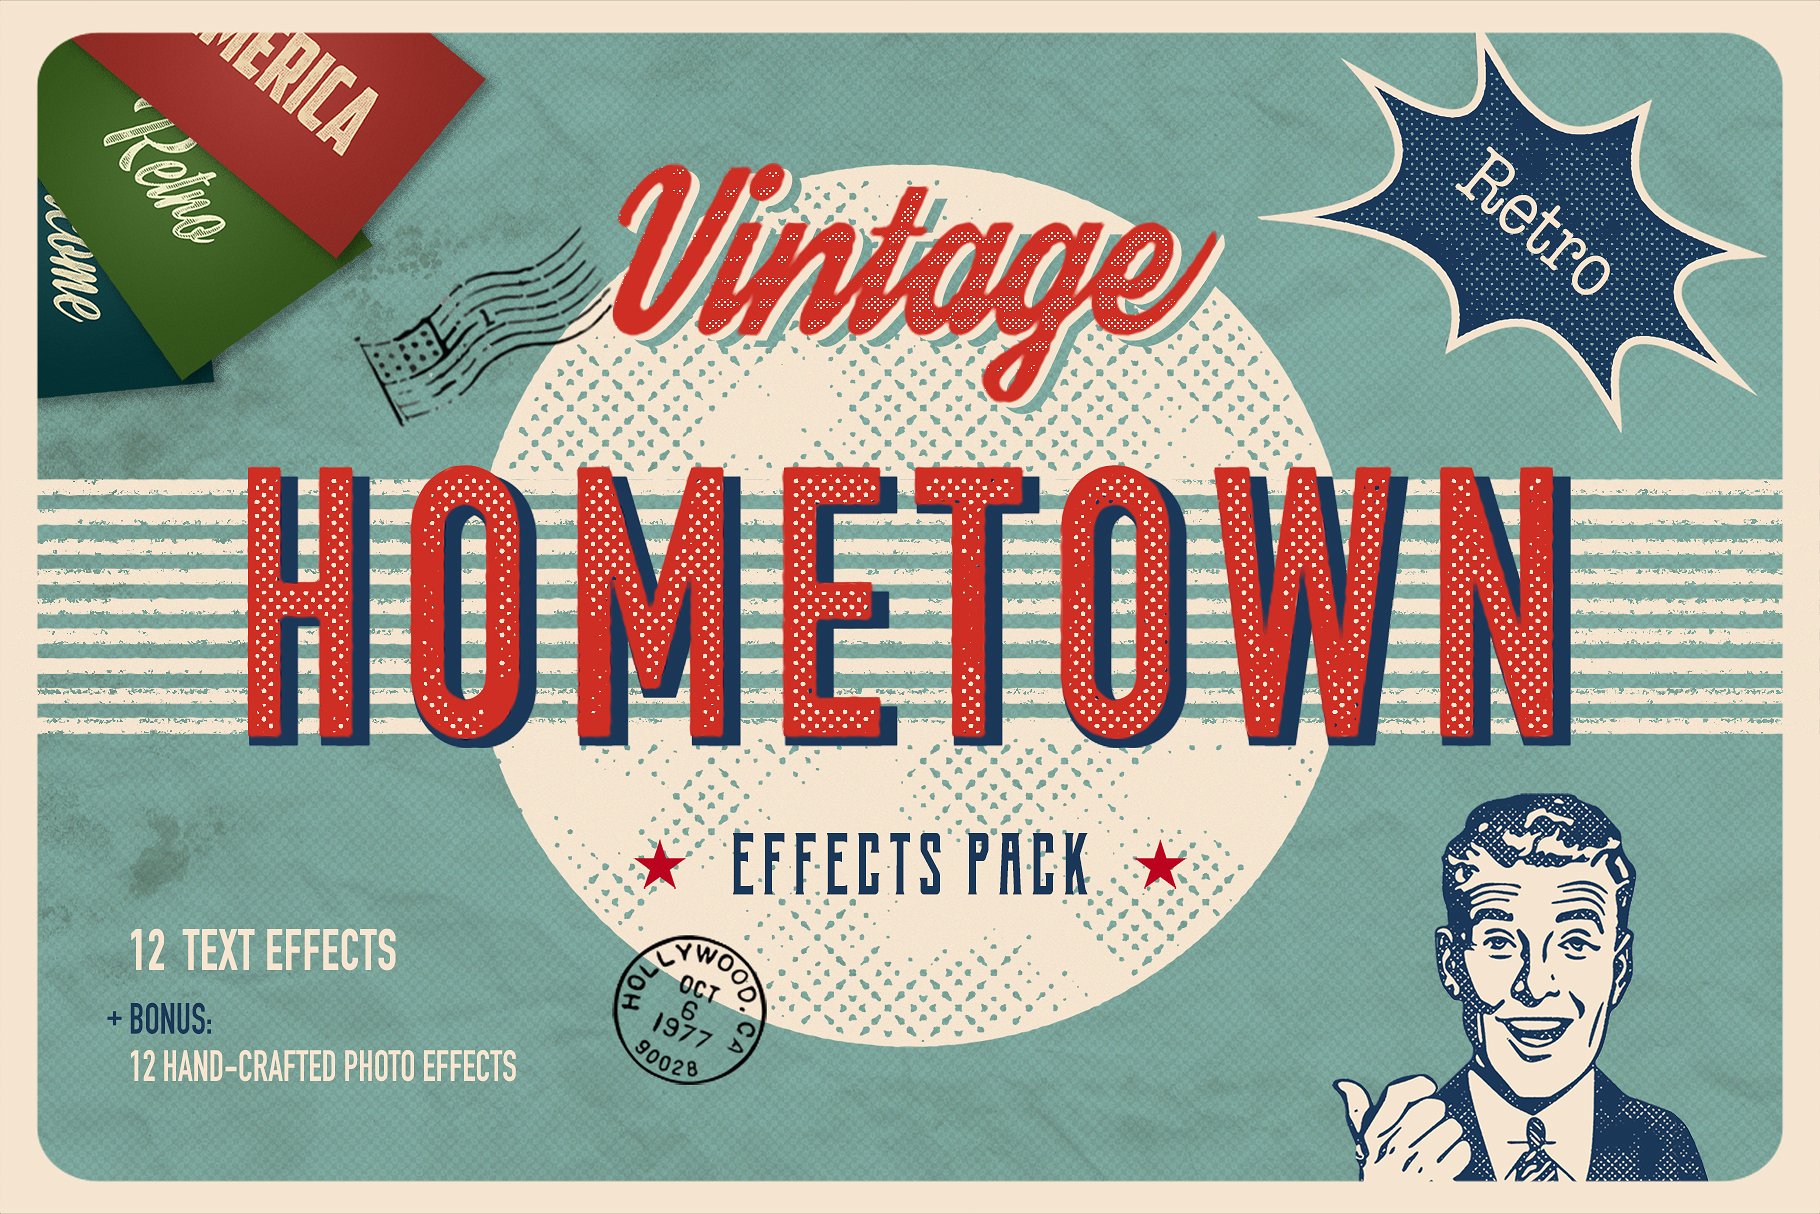 复古怀旧乡村风格图层样式 Vintage Hometown Effects Pack +BONUS插图